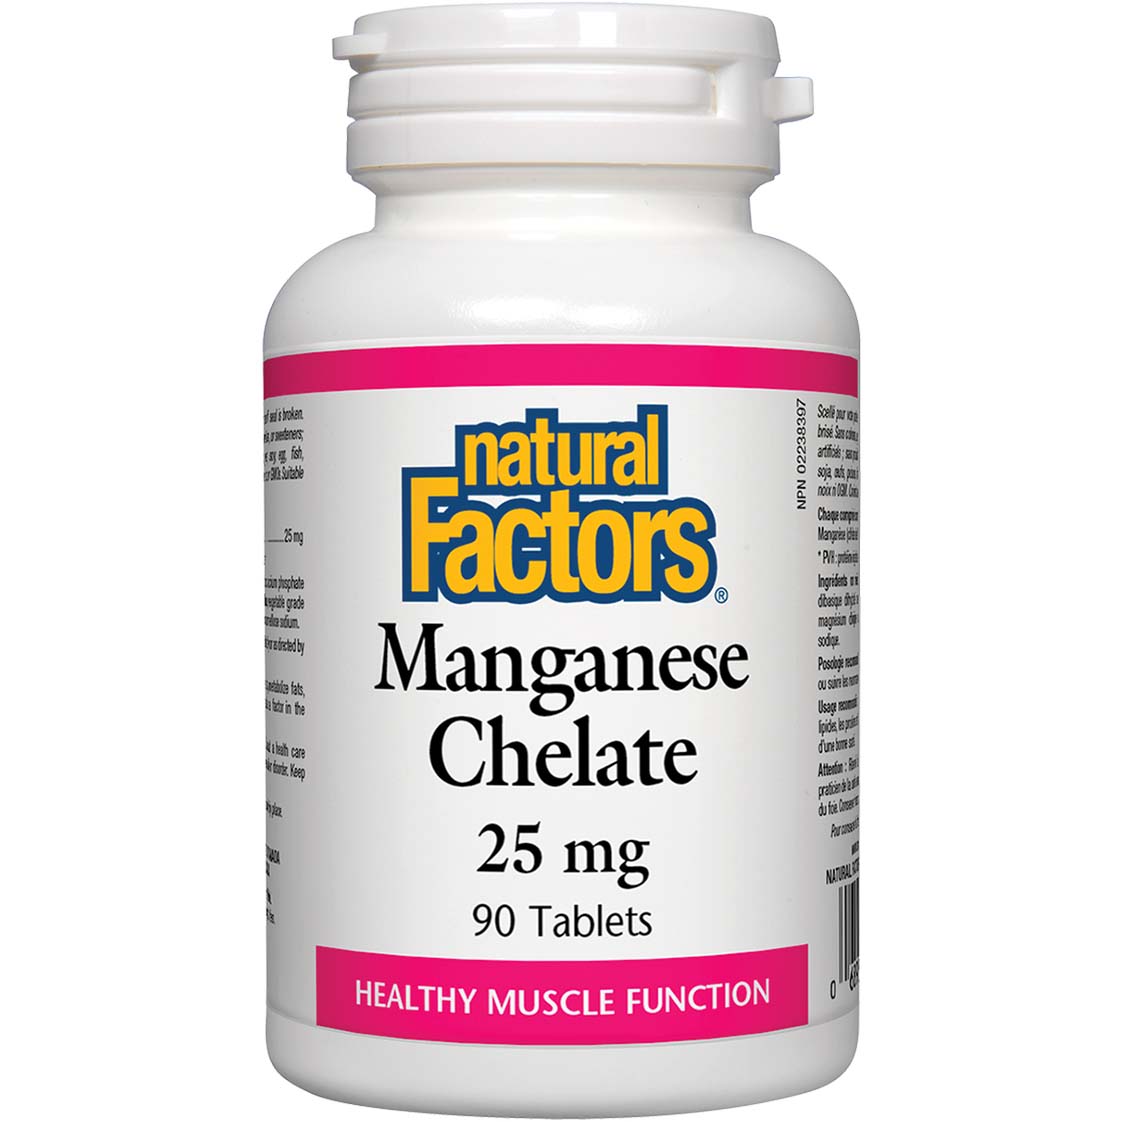 Natural Factors Manganese Chelate 90 Tablets 25 mg